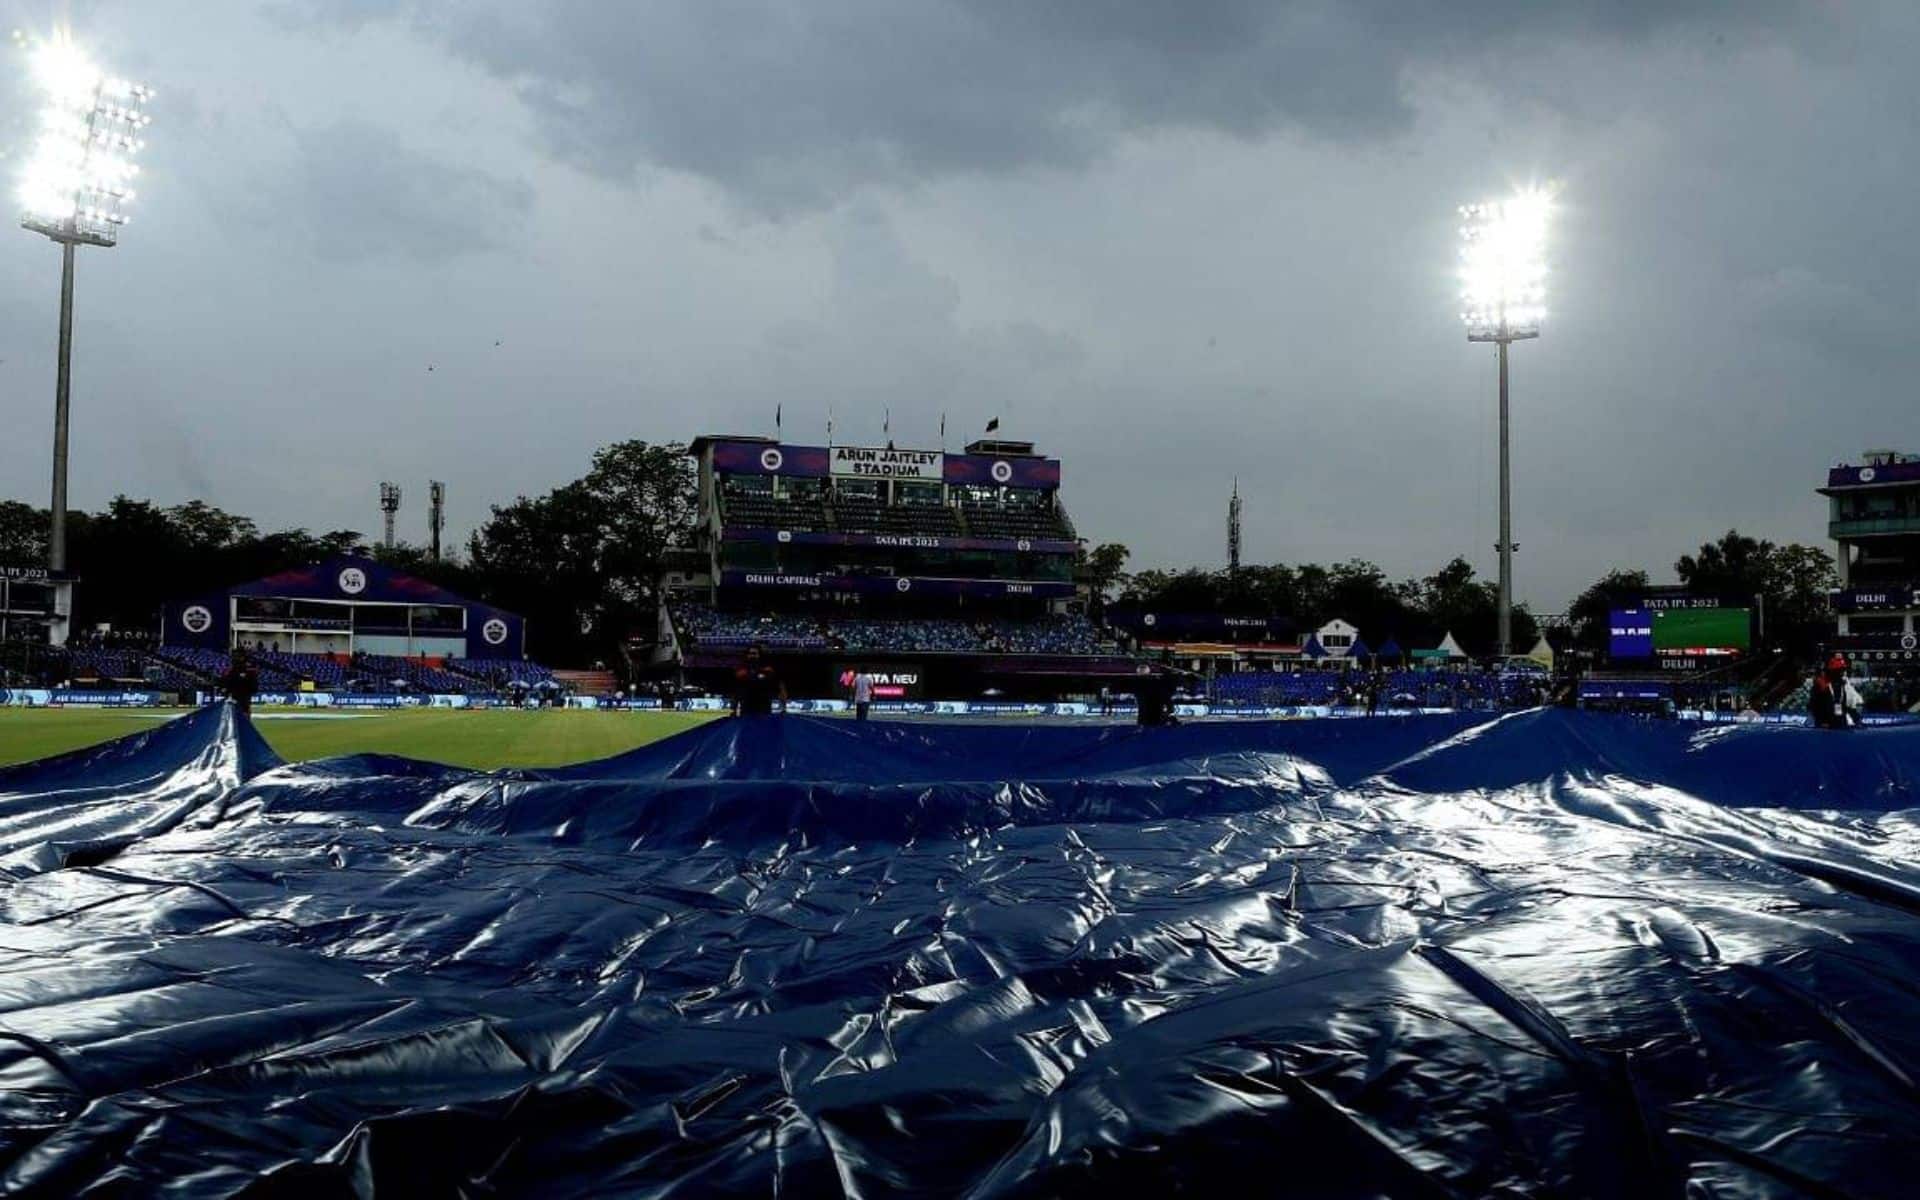 Arun Jaitley Stadium Delhi weather report (x.com)